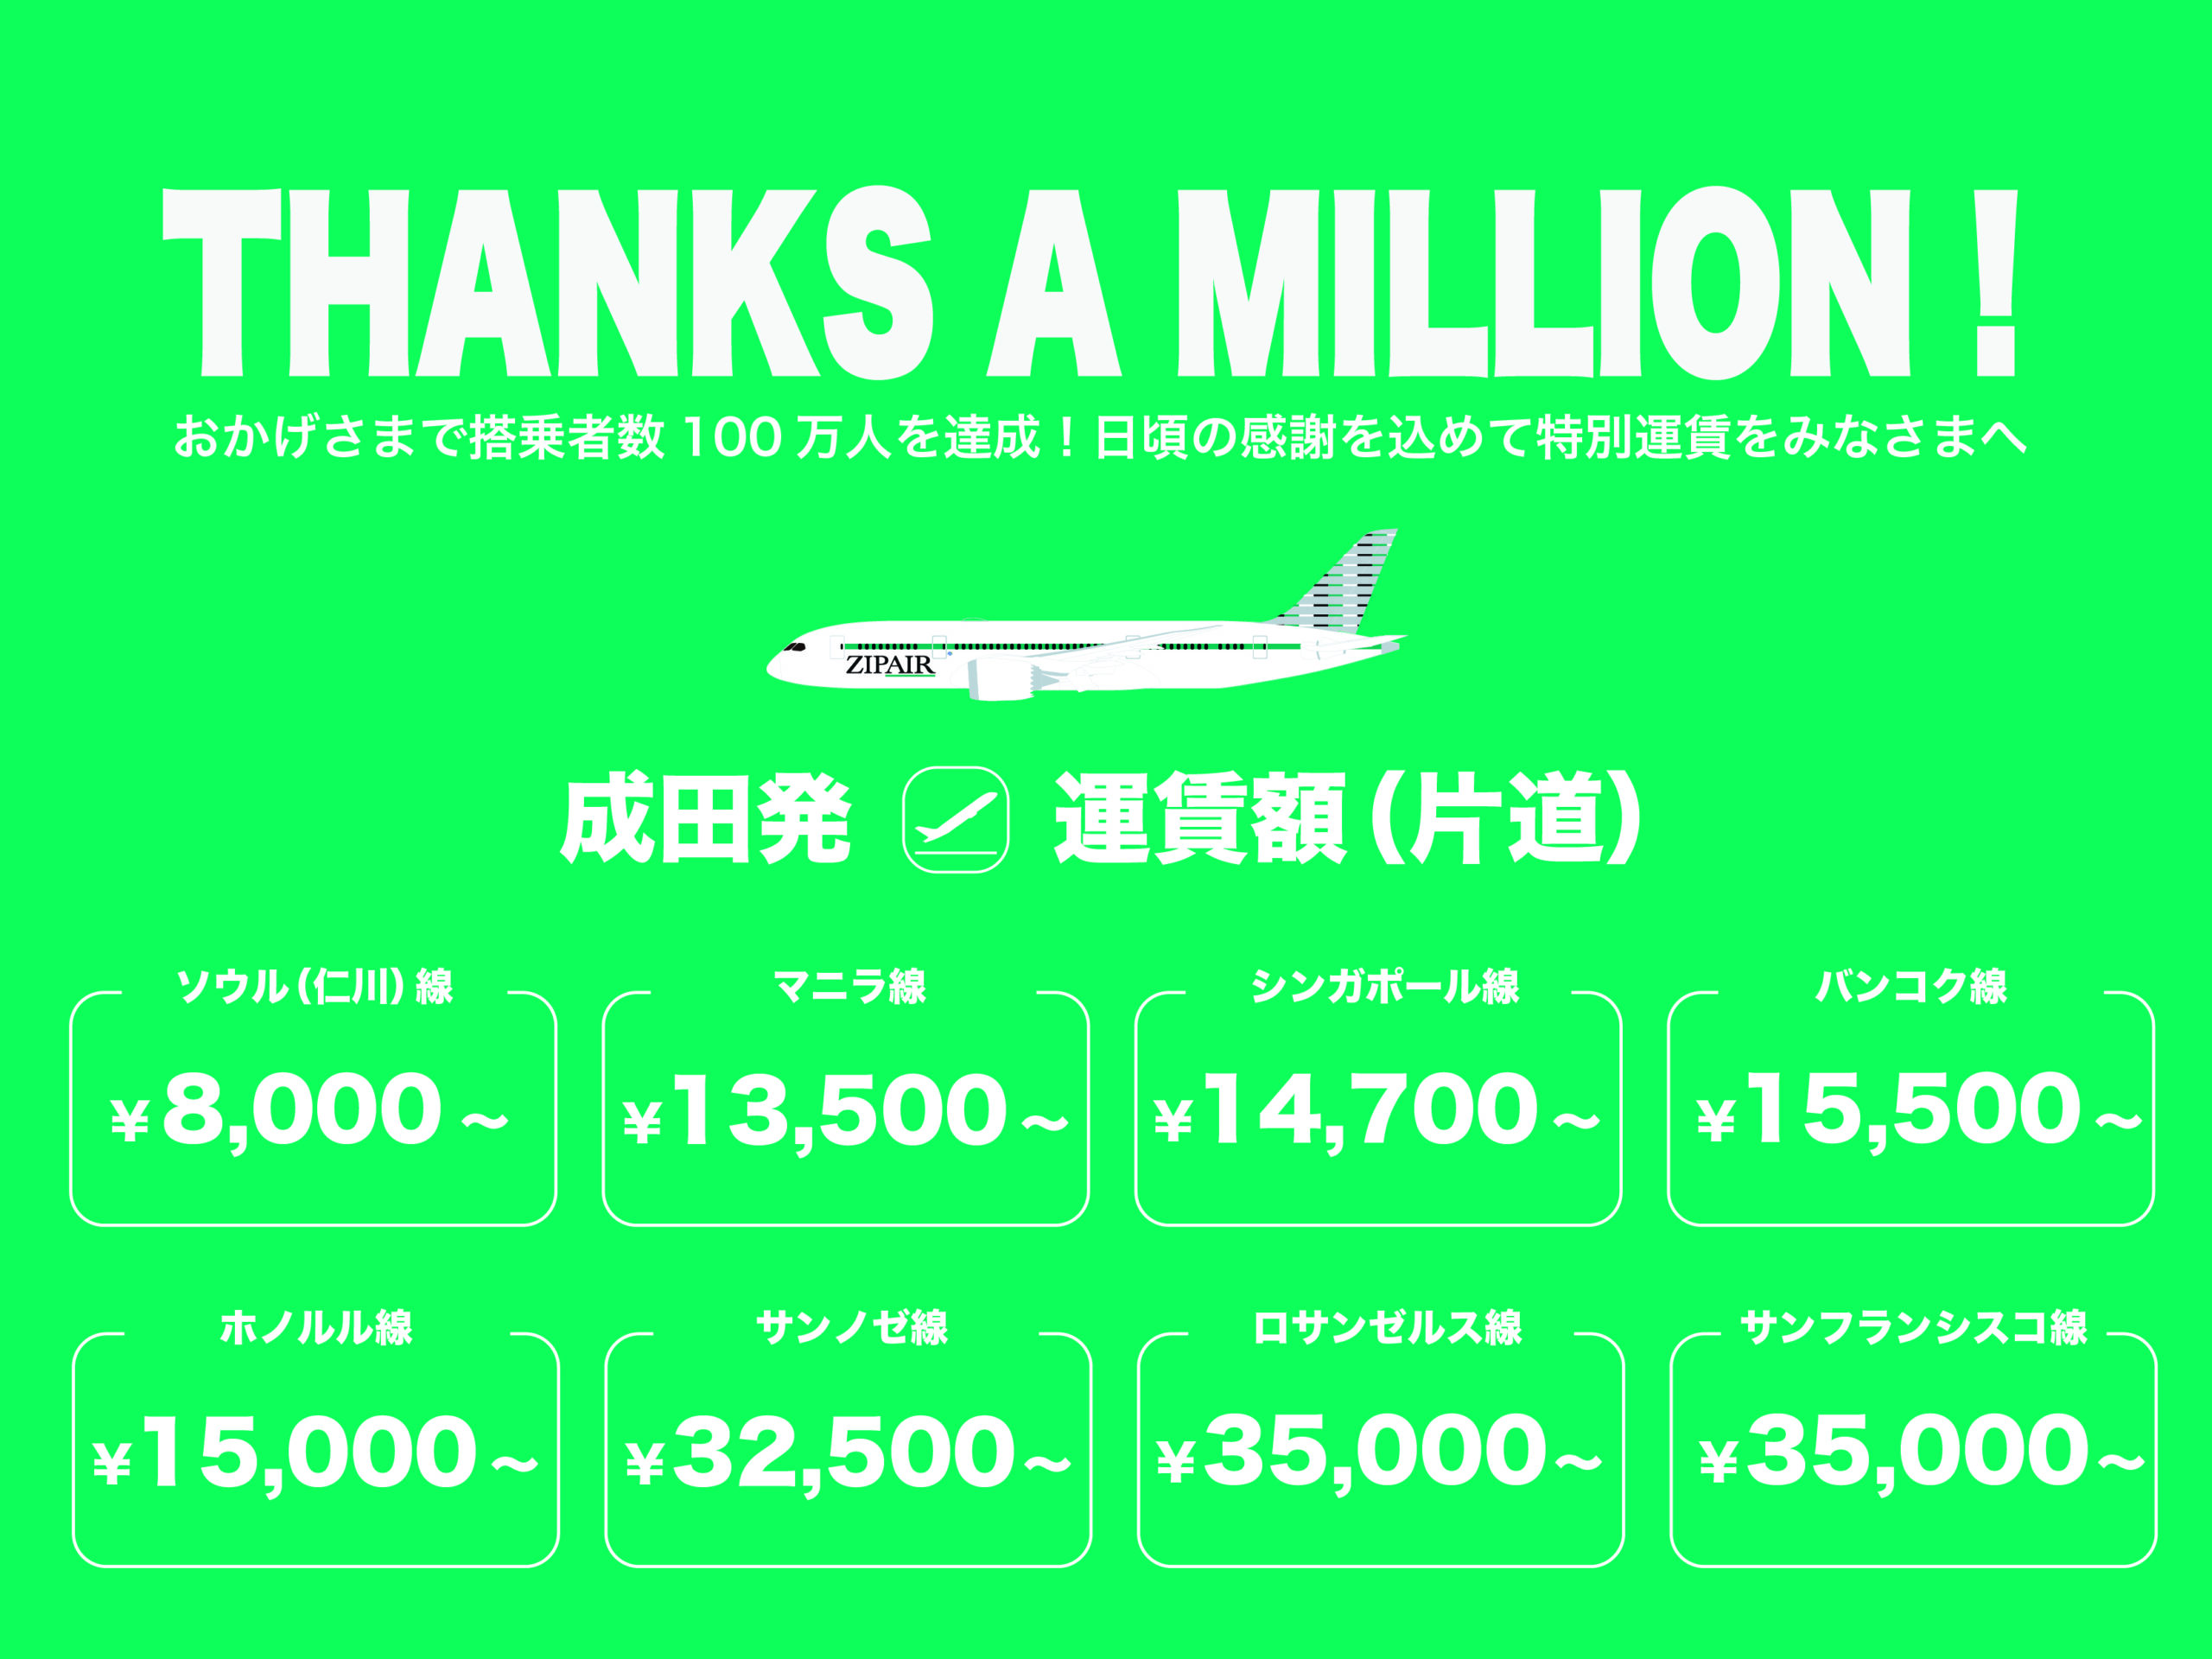 ジップエア、搭乗者数100万人達成を記念して片道8,000円からのセールを 